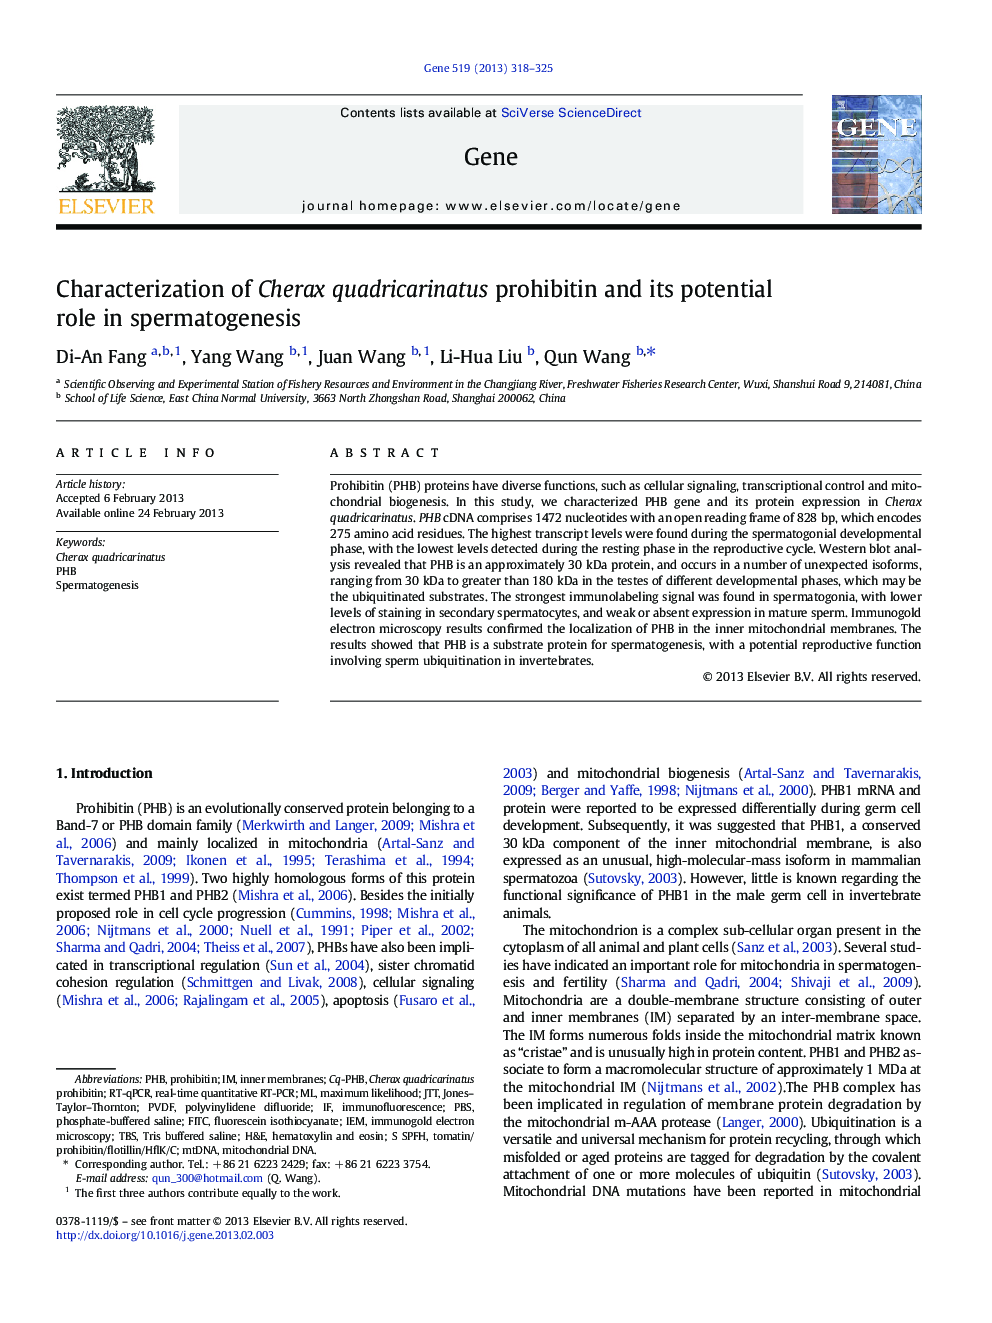 Characterization of Cherax quadricarinatus prohibitin and its potential role in spermatogenesis